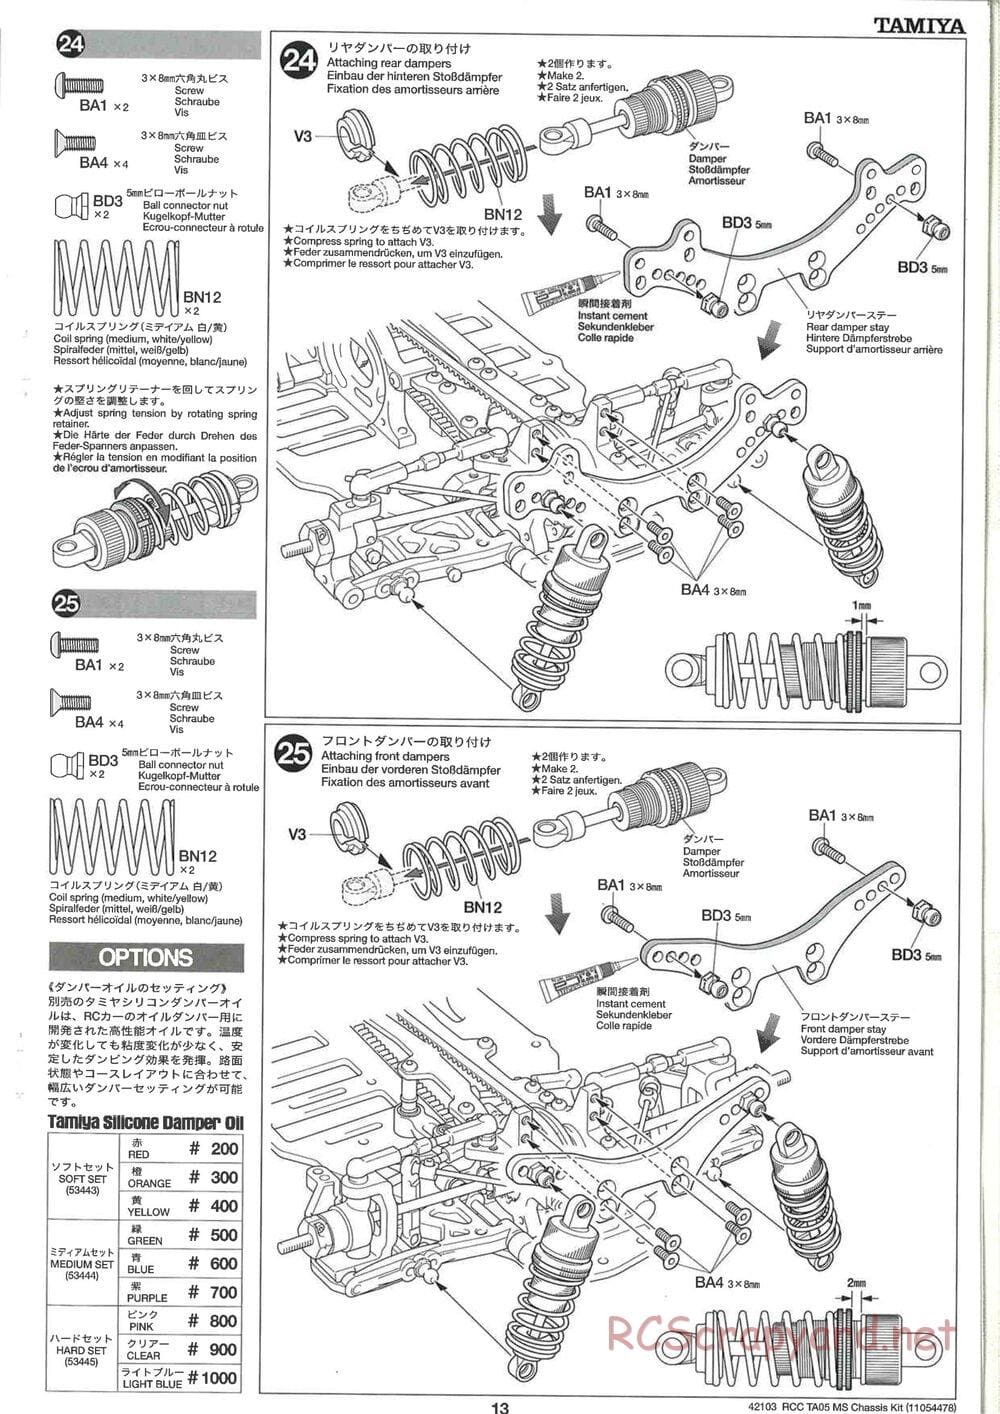 Tamiya - TA05 MS Chassis - Manual - Page 13